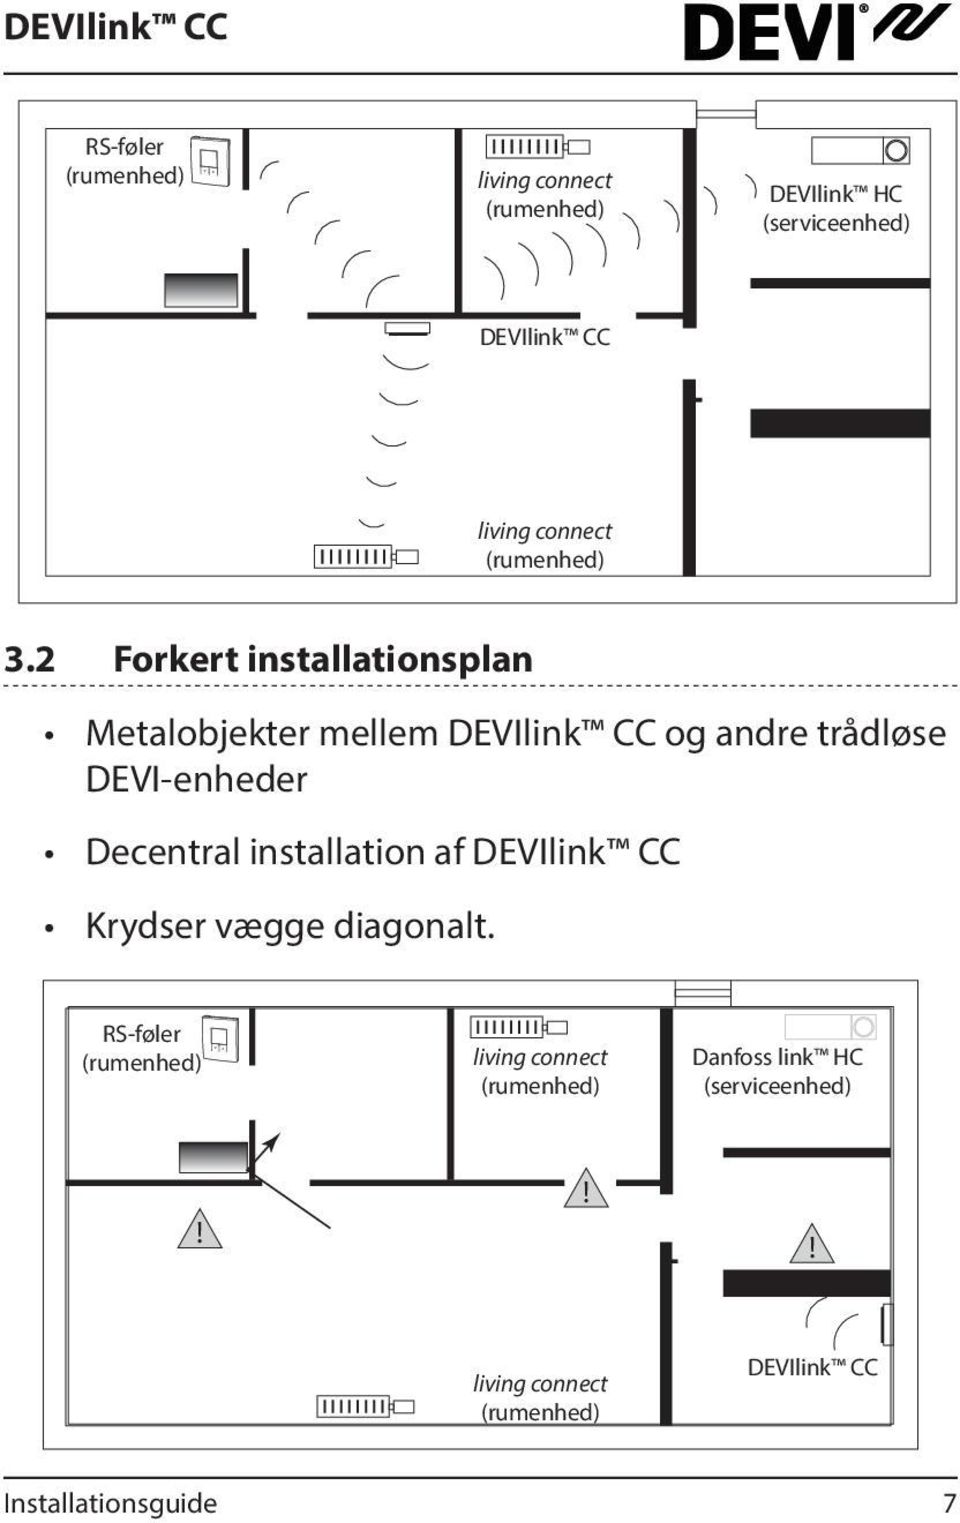 2 Forkert installationsplan Metalobjekter mellem DEVIlink CC og andre trådløse DEVI-enheder